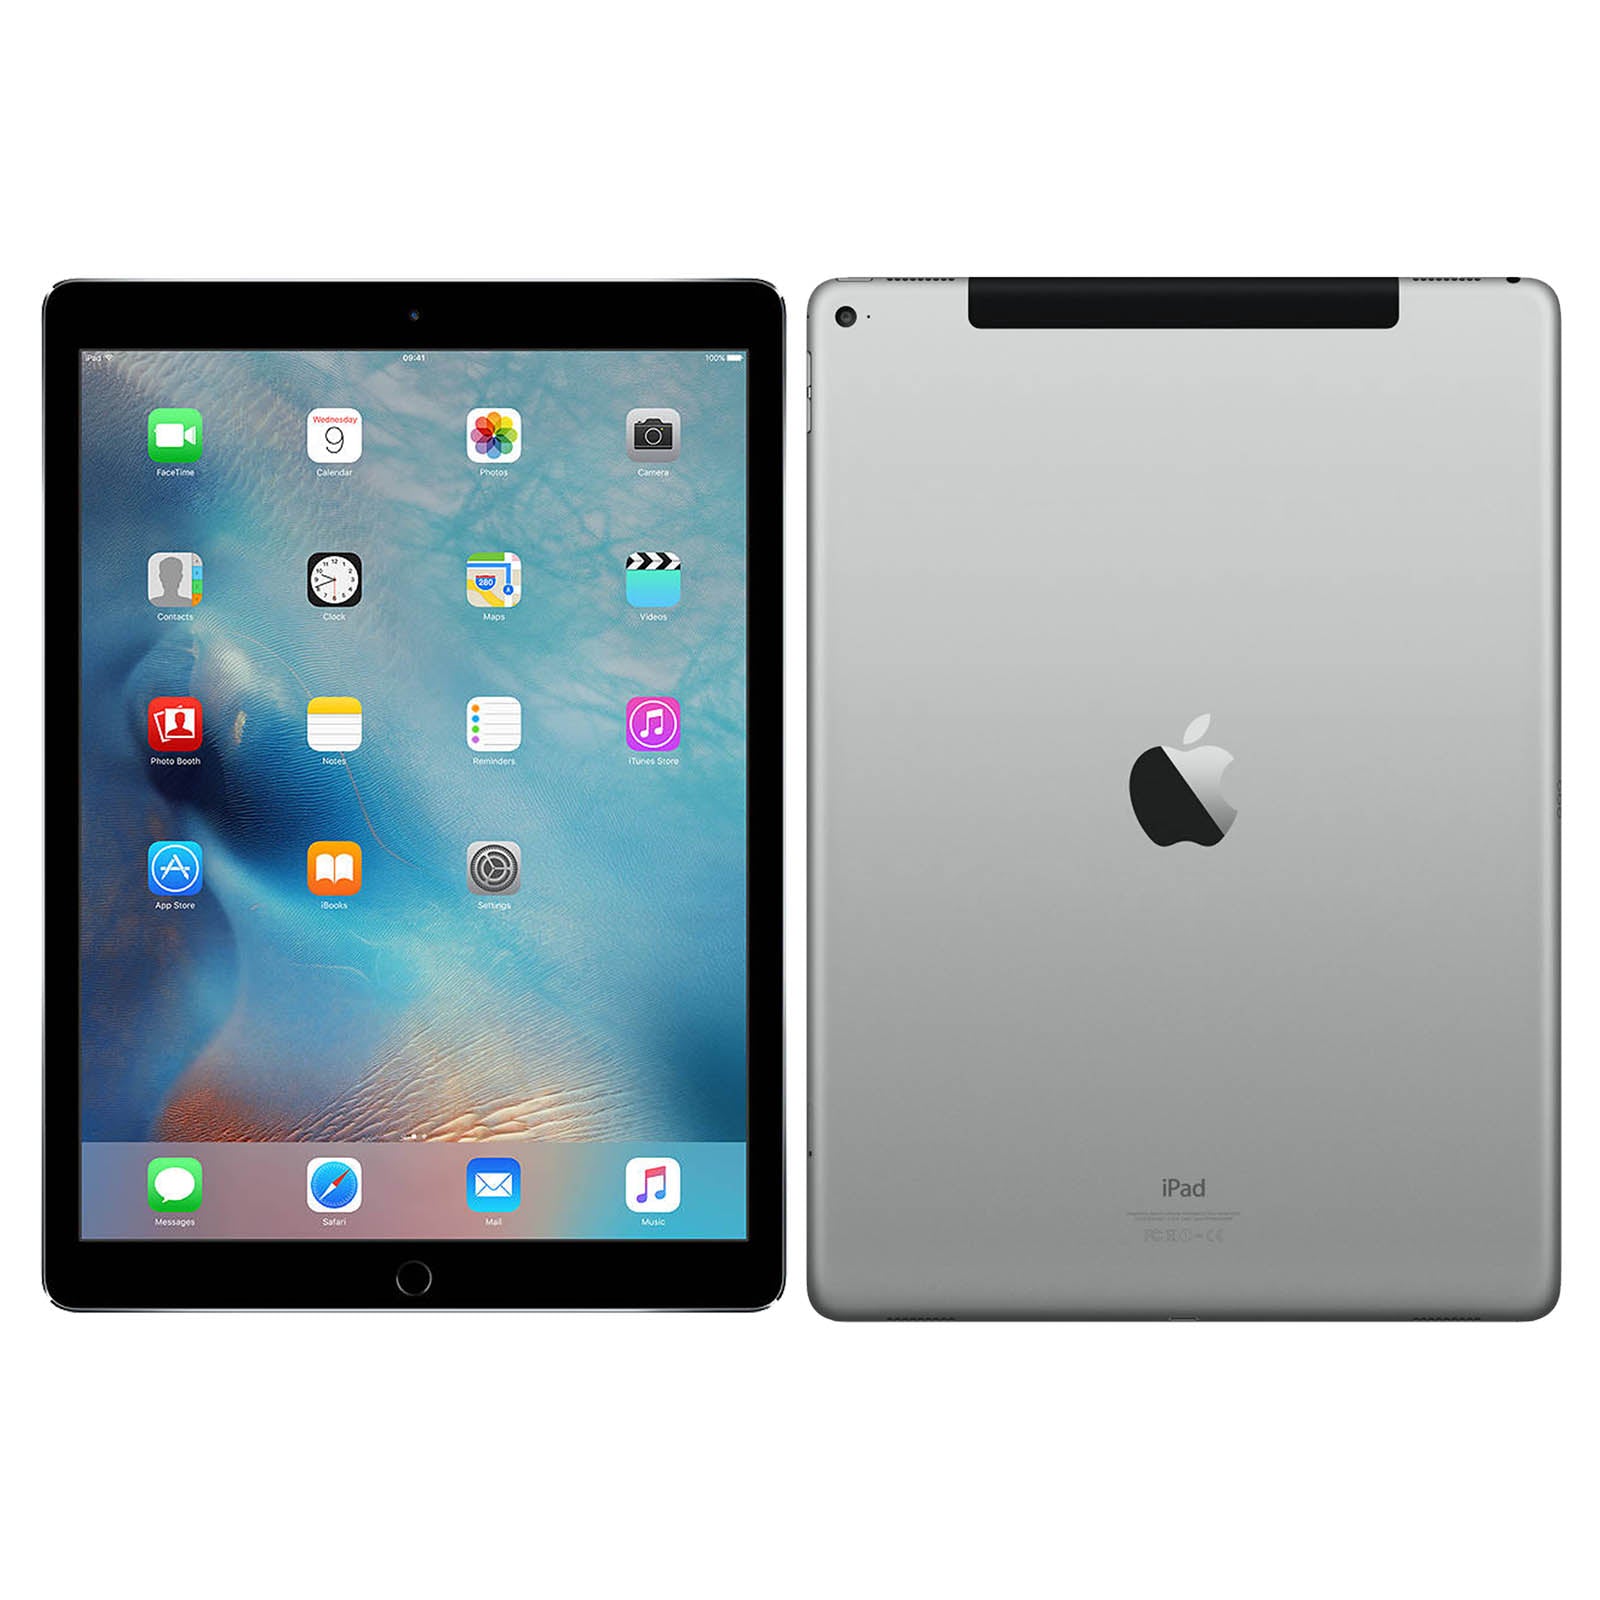 Apple iPad Pro 12,9 256GB Wi-Fi Gris Espacial 3ª Gen (Producto  Reacondicionado) - Tablet